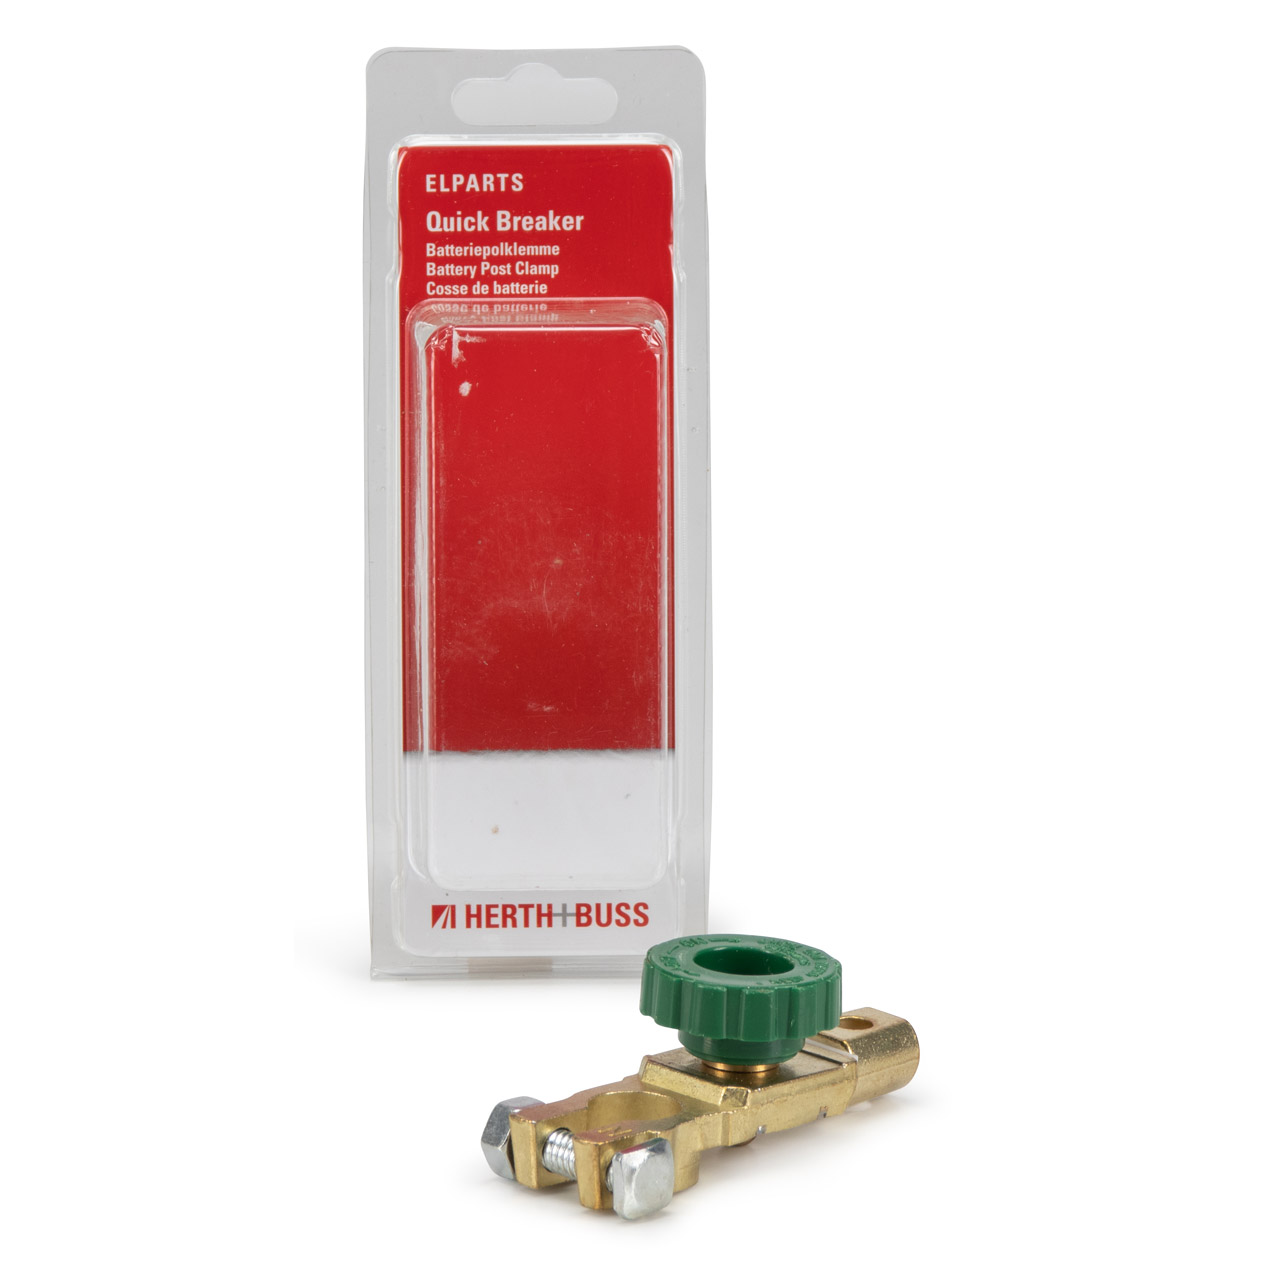 HERTH+BUSS ELPARTS Quick Breaker Batteriepolklemme Minuspol mit Batterietrennschalter